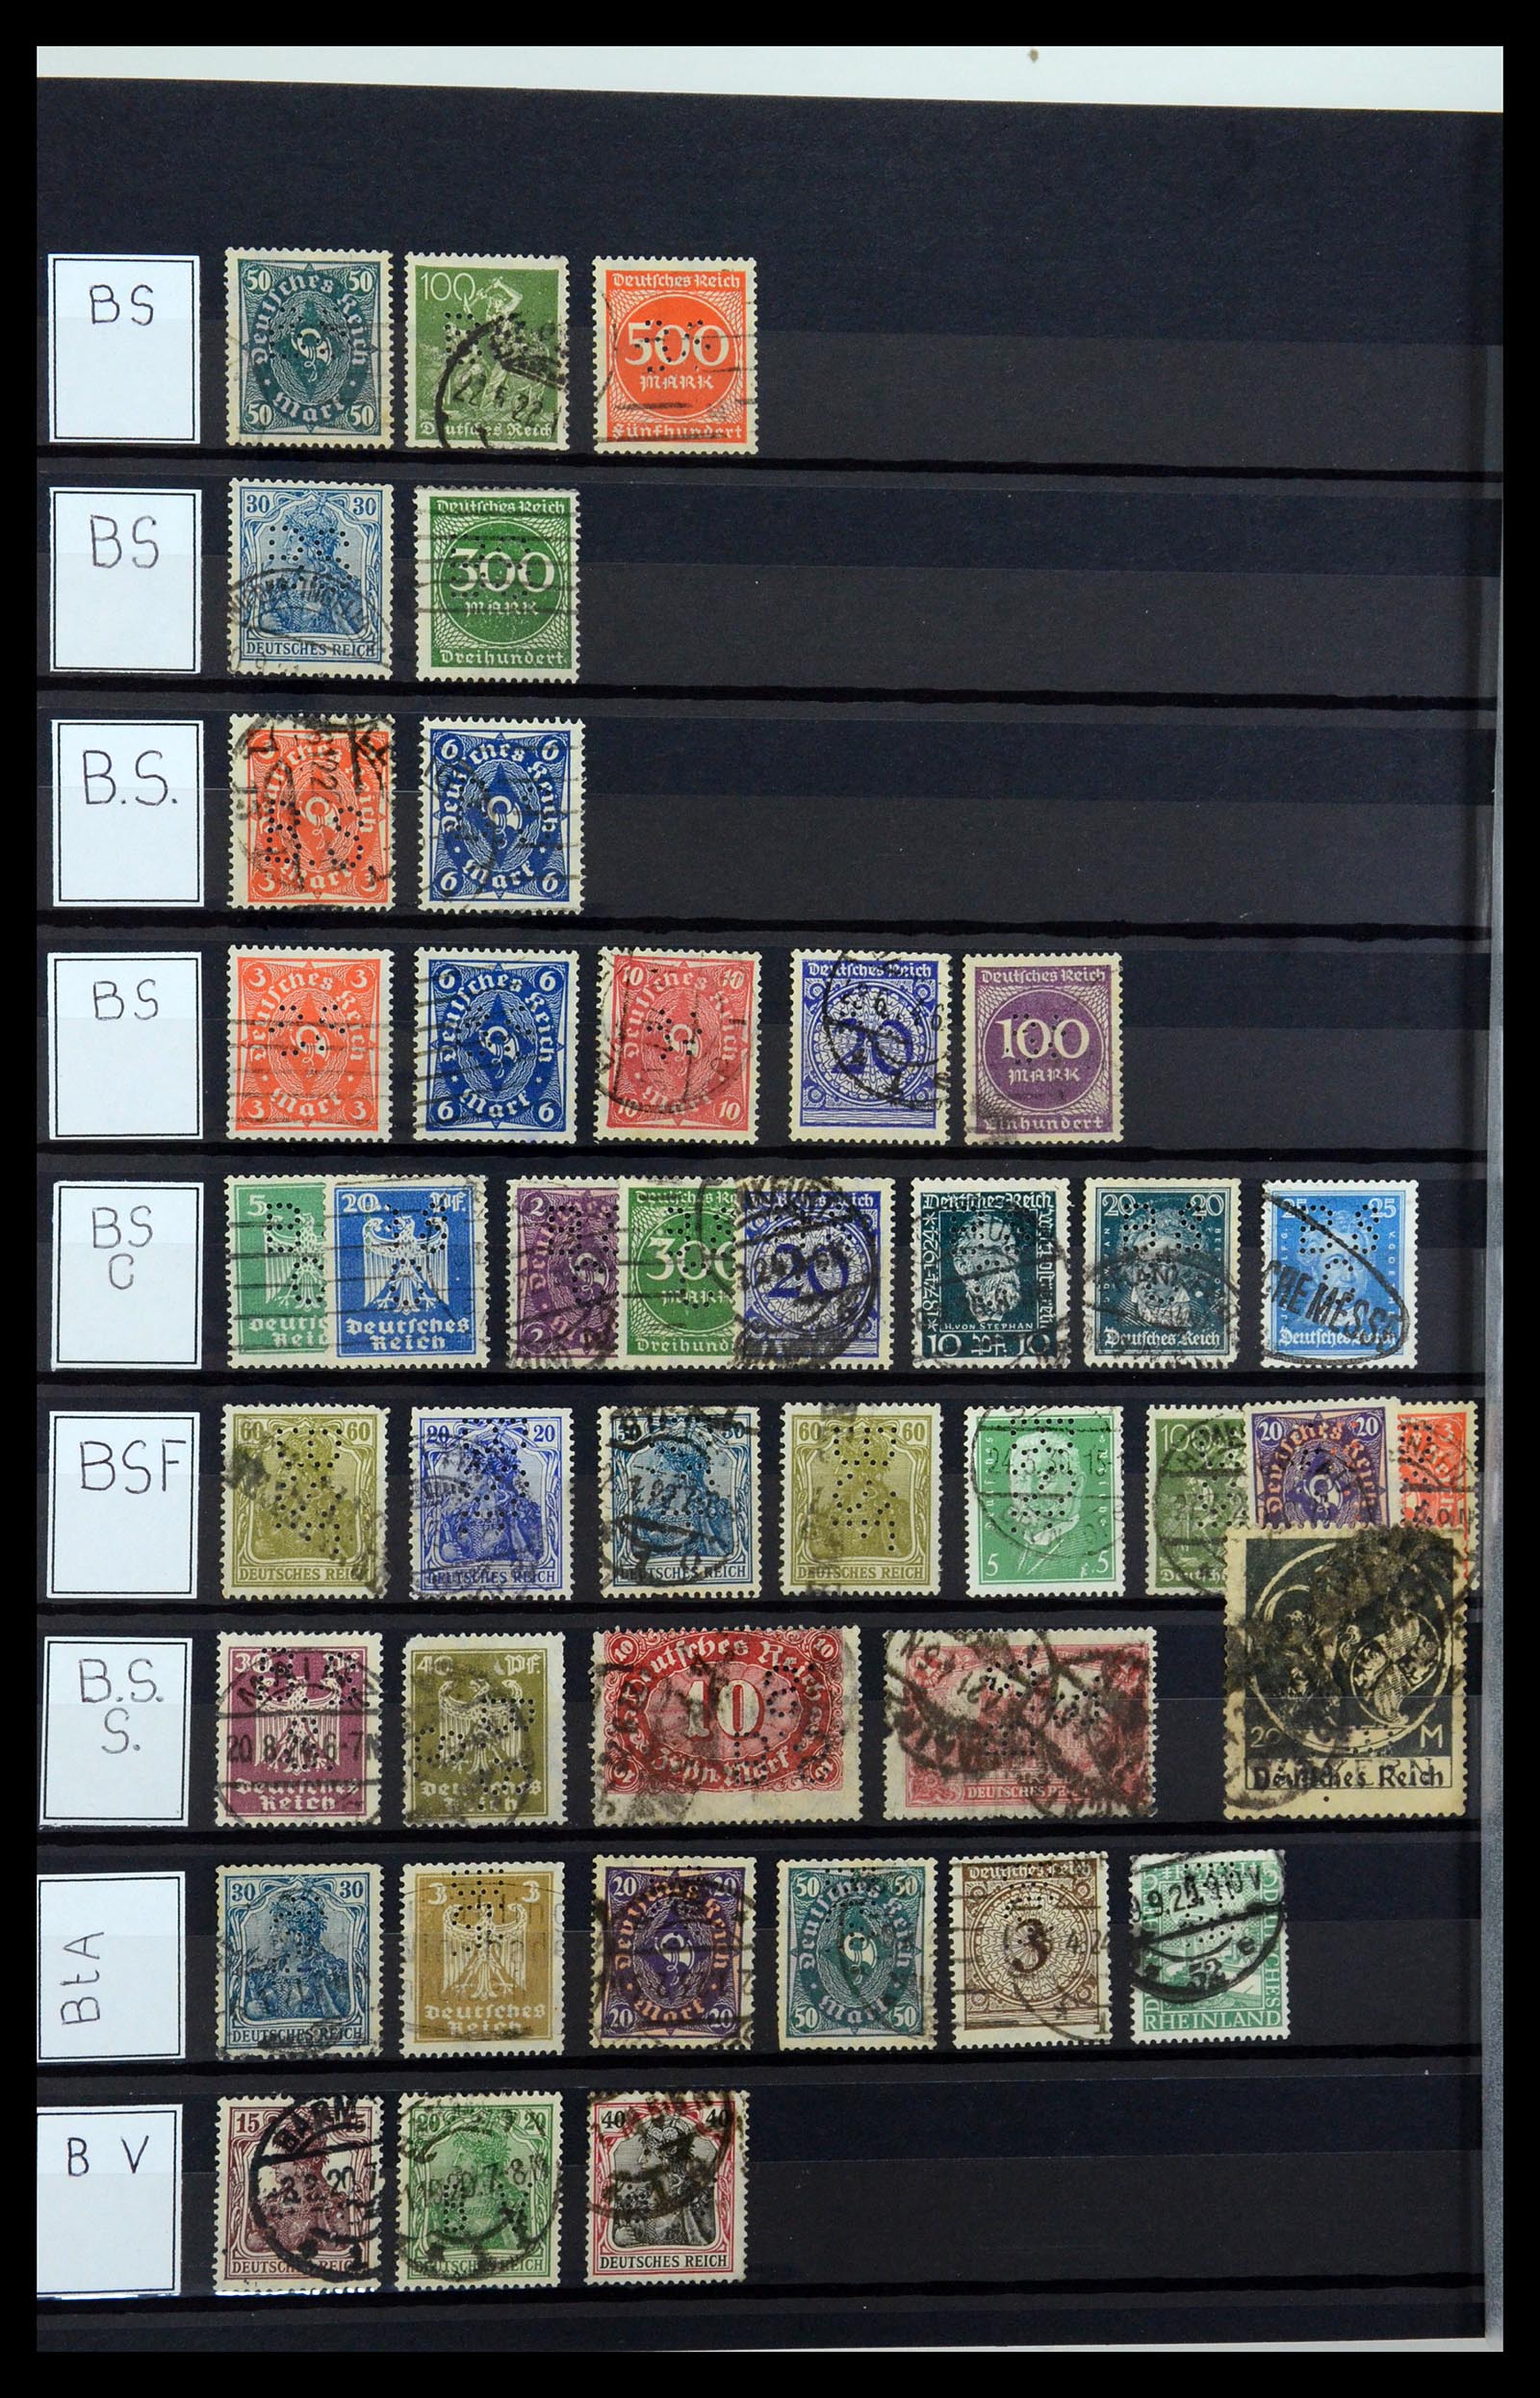 36405 048 - Stamp collection 36405 German Reich perfins 1880-1945.